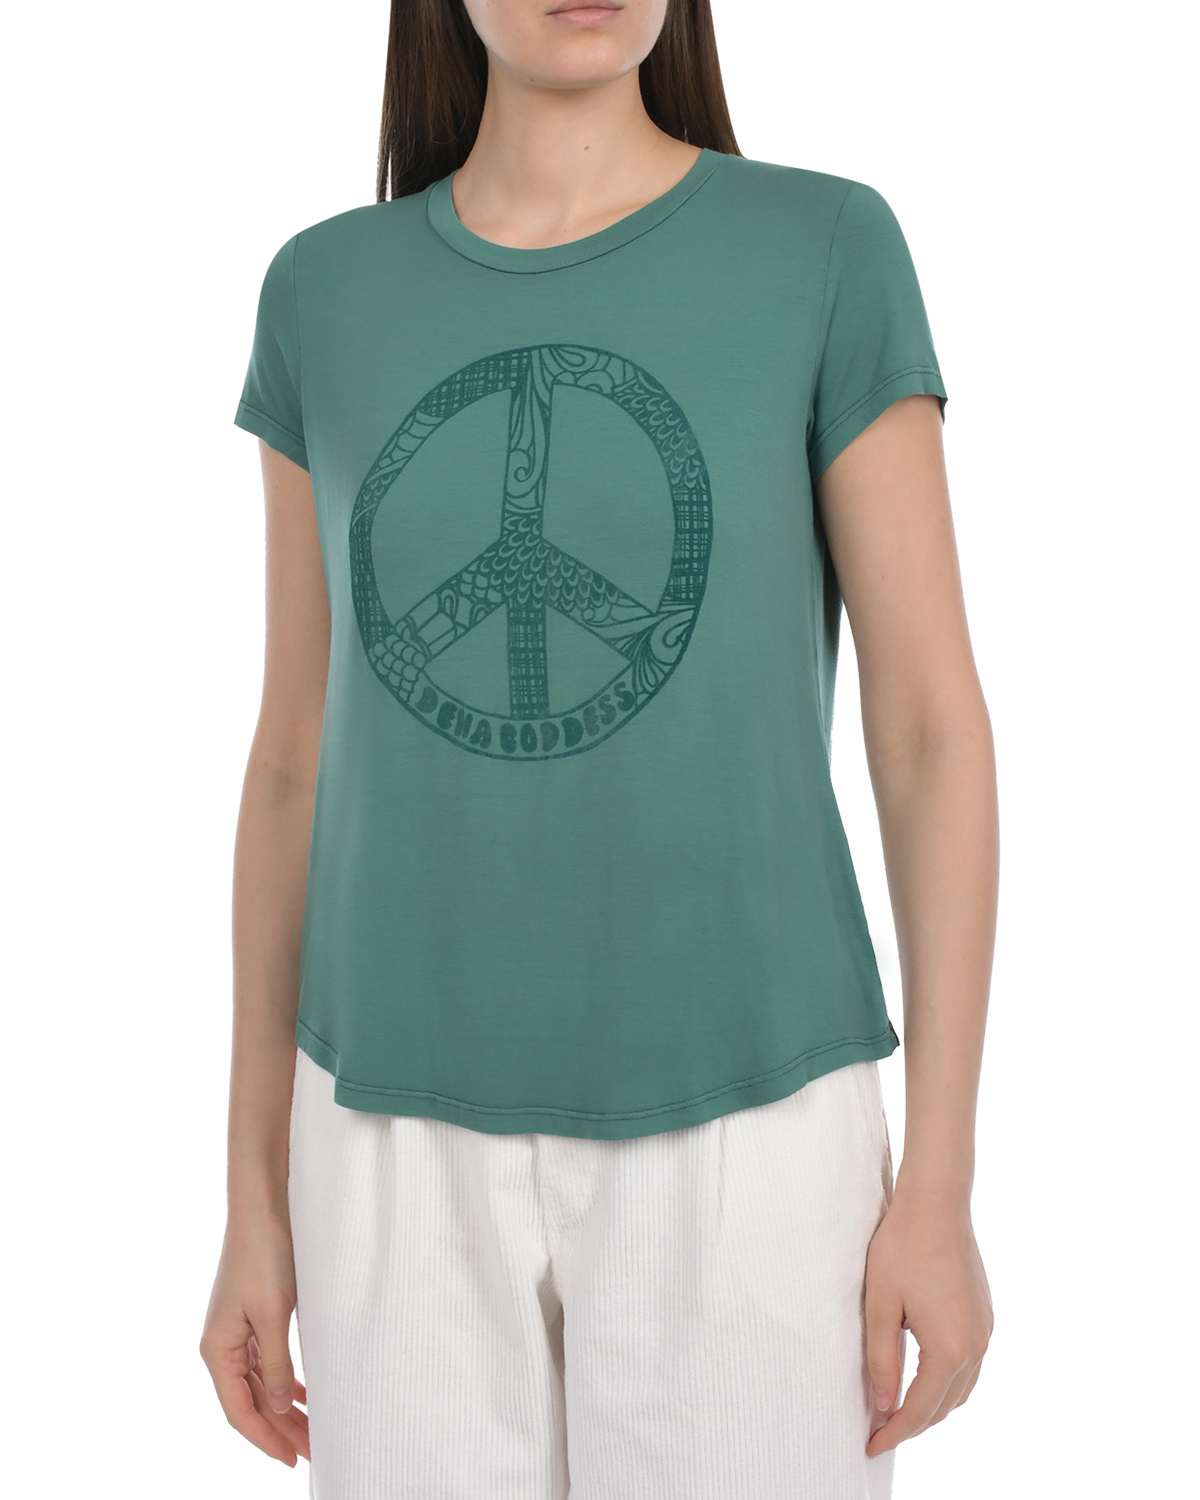 Зеленая футболка с принтом "Pacific" Deha, размер 40, цвет зеленый - фото 7